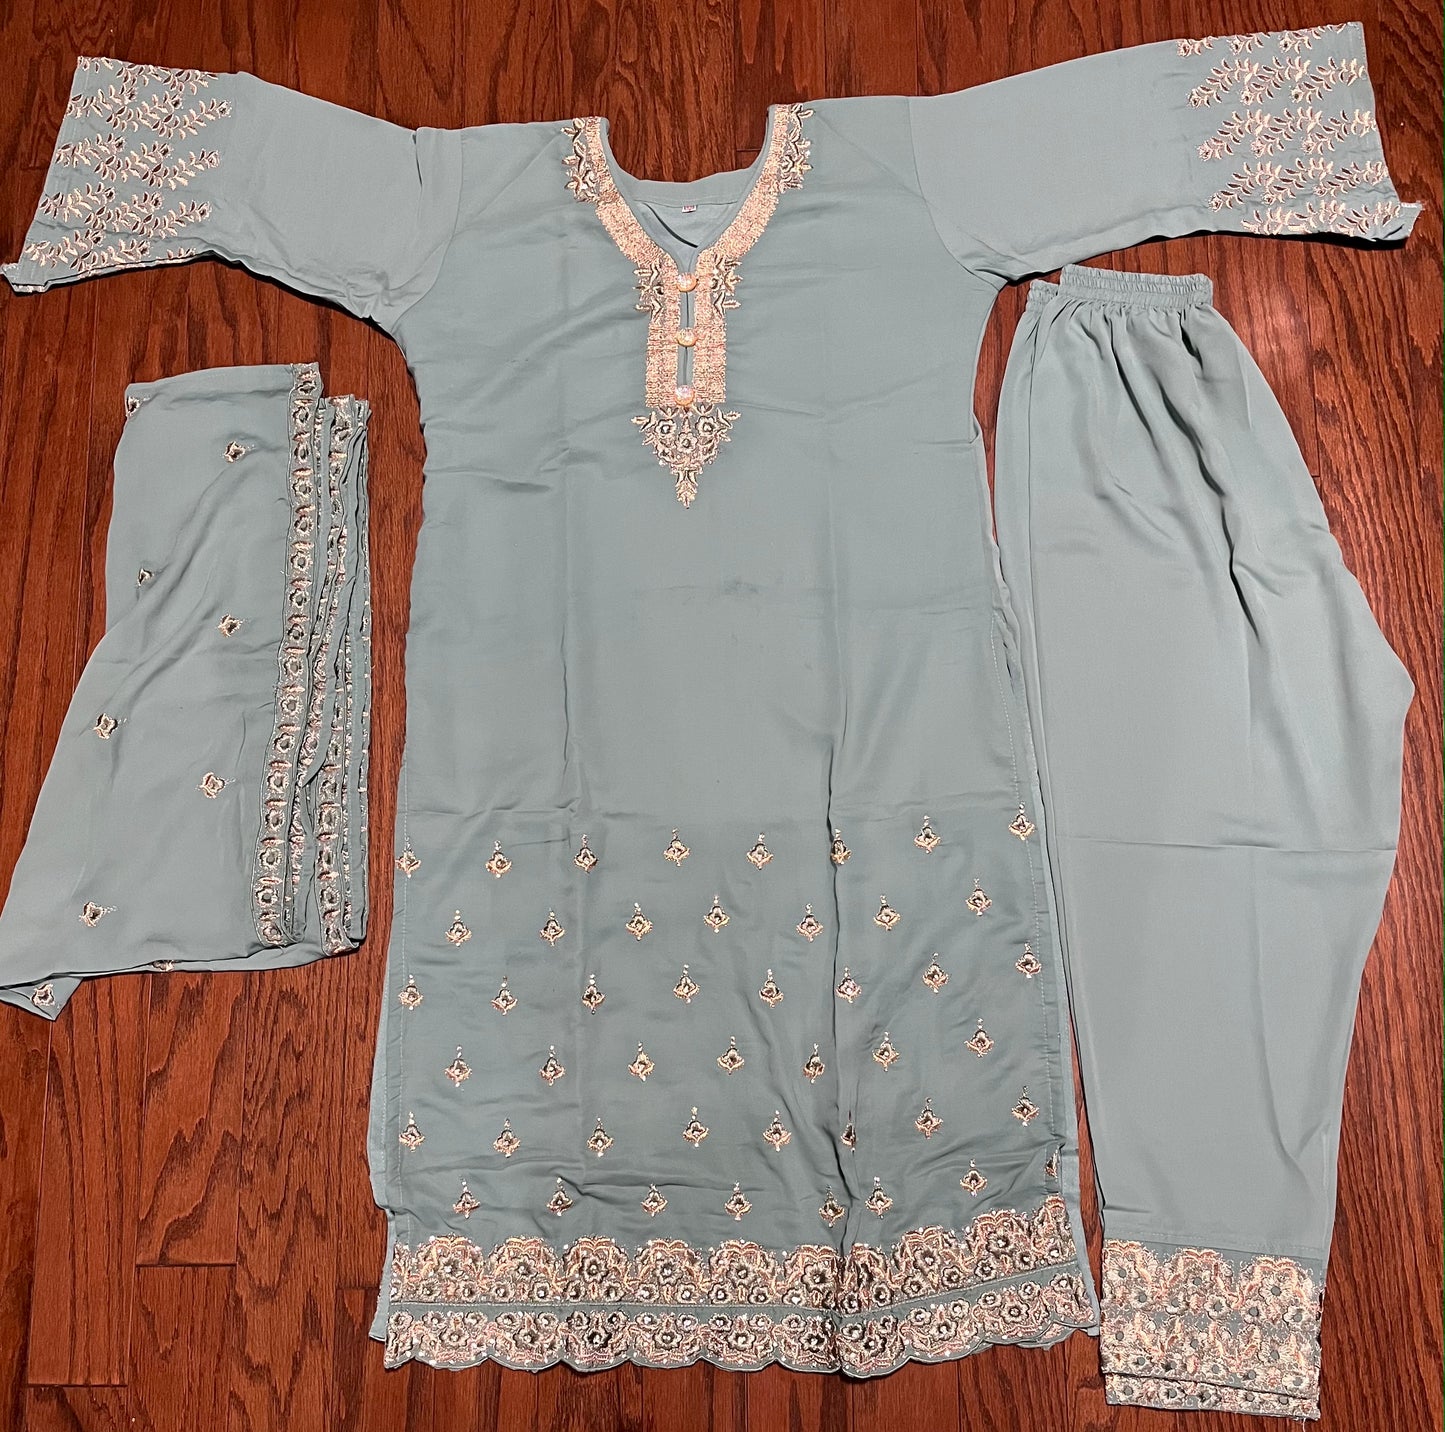 Clearance Sale: Stylish Linen & Silk Party Wear Dress